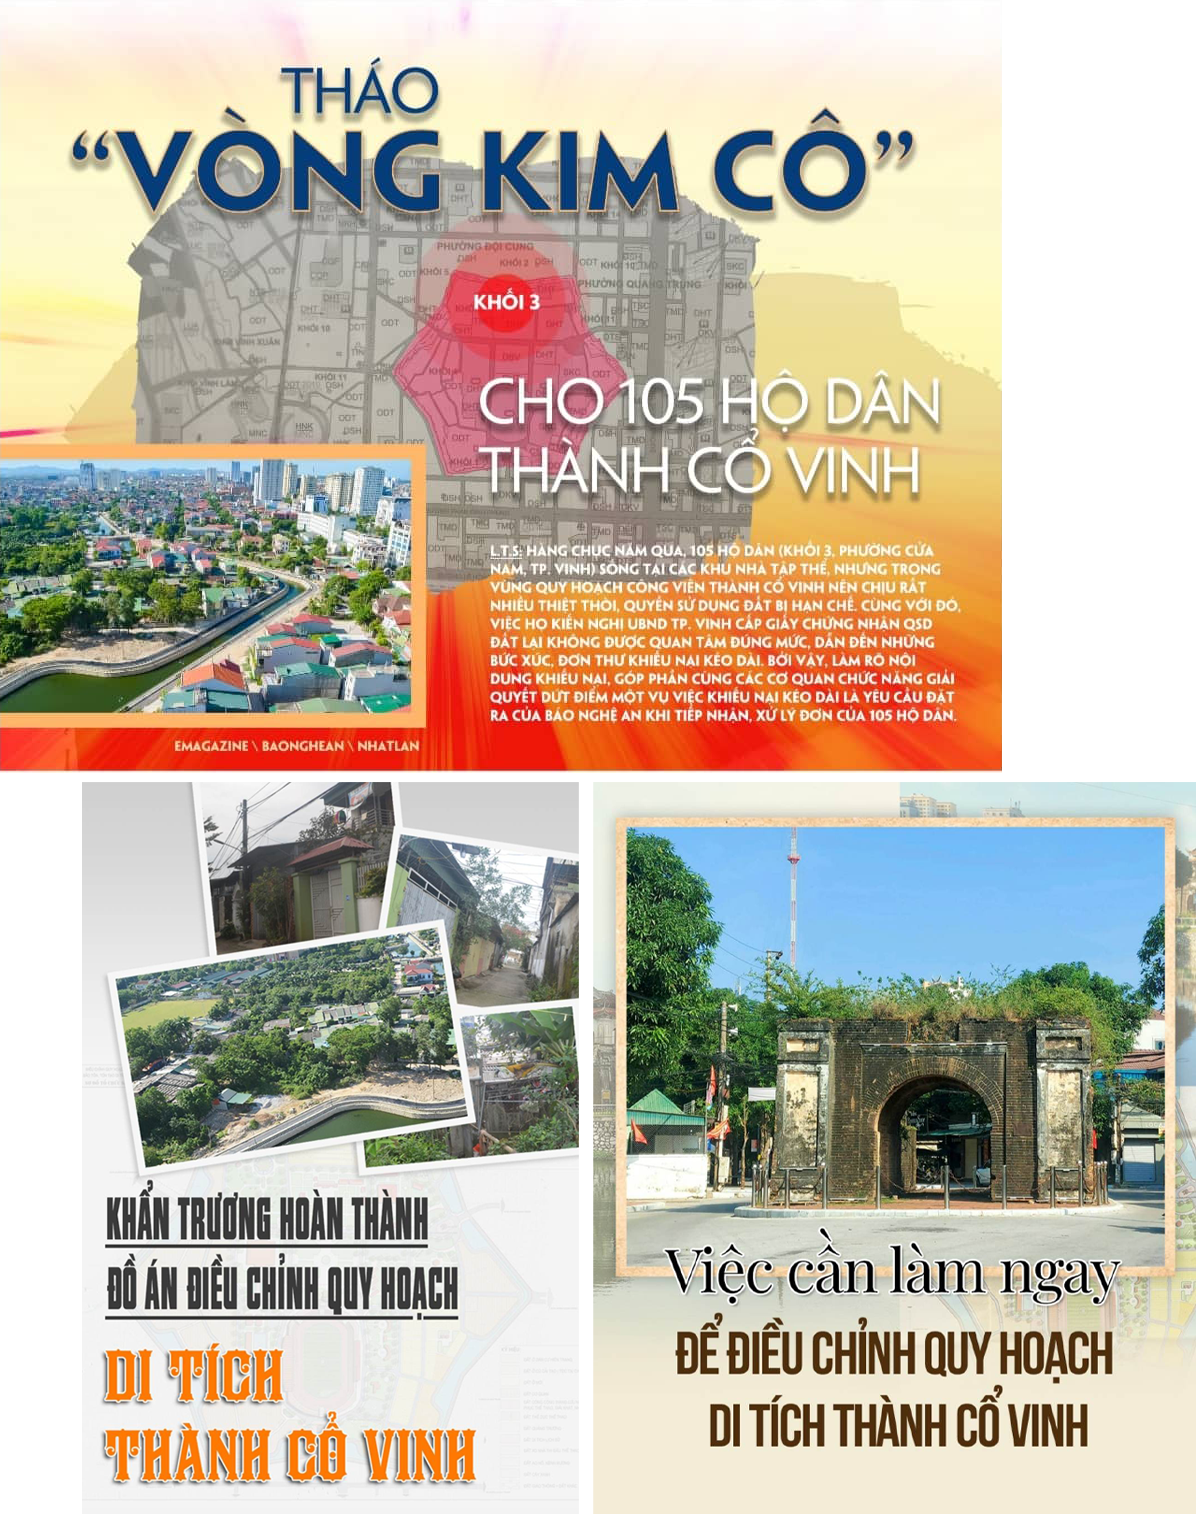 Bìa các bài viết liên quan đến việc giải quyết các khu tập thể vùng Thành cổ Vinh trên Báo Nghệ An điện tử.